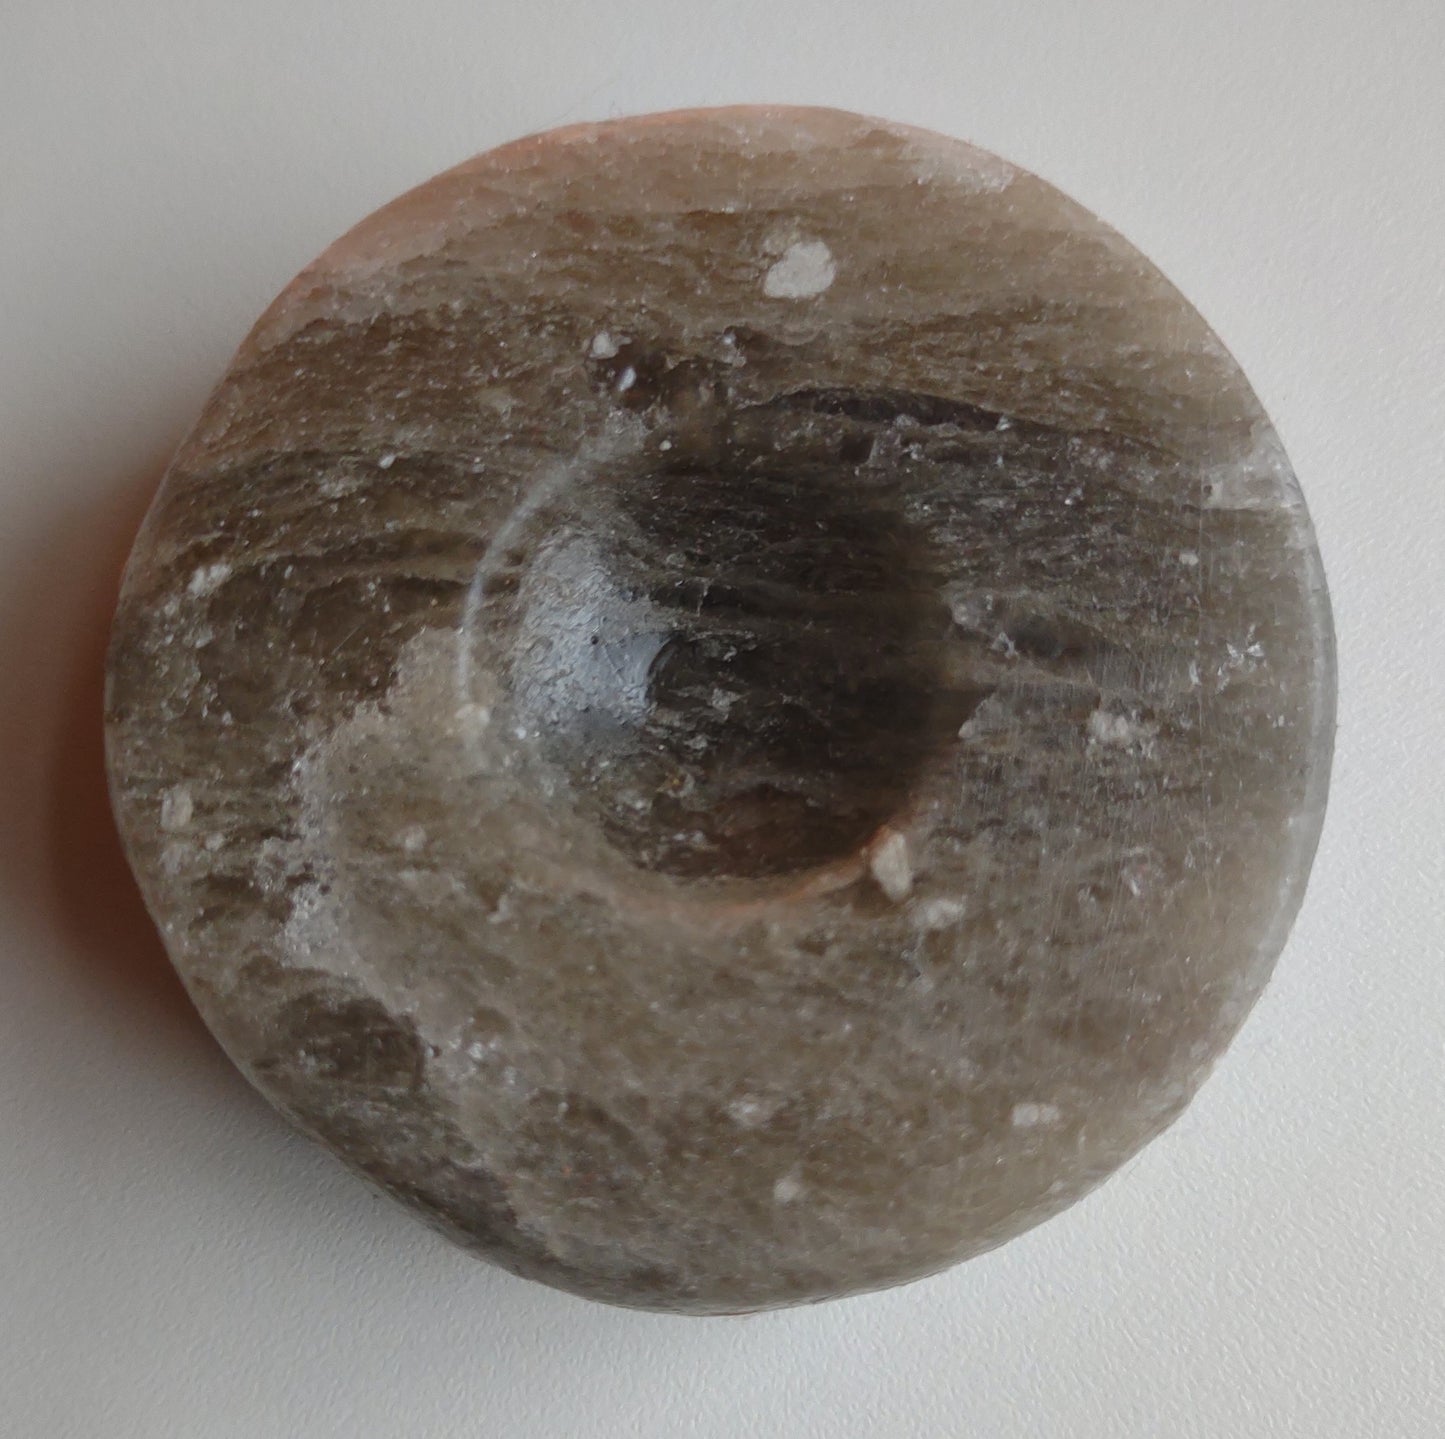 Aromadisc - Himalayan Salt Stone